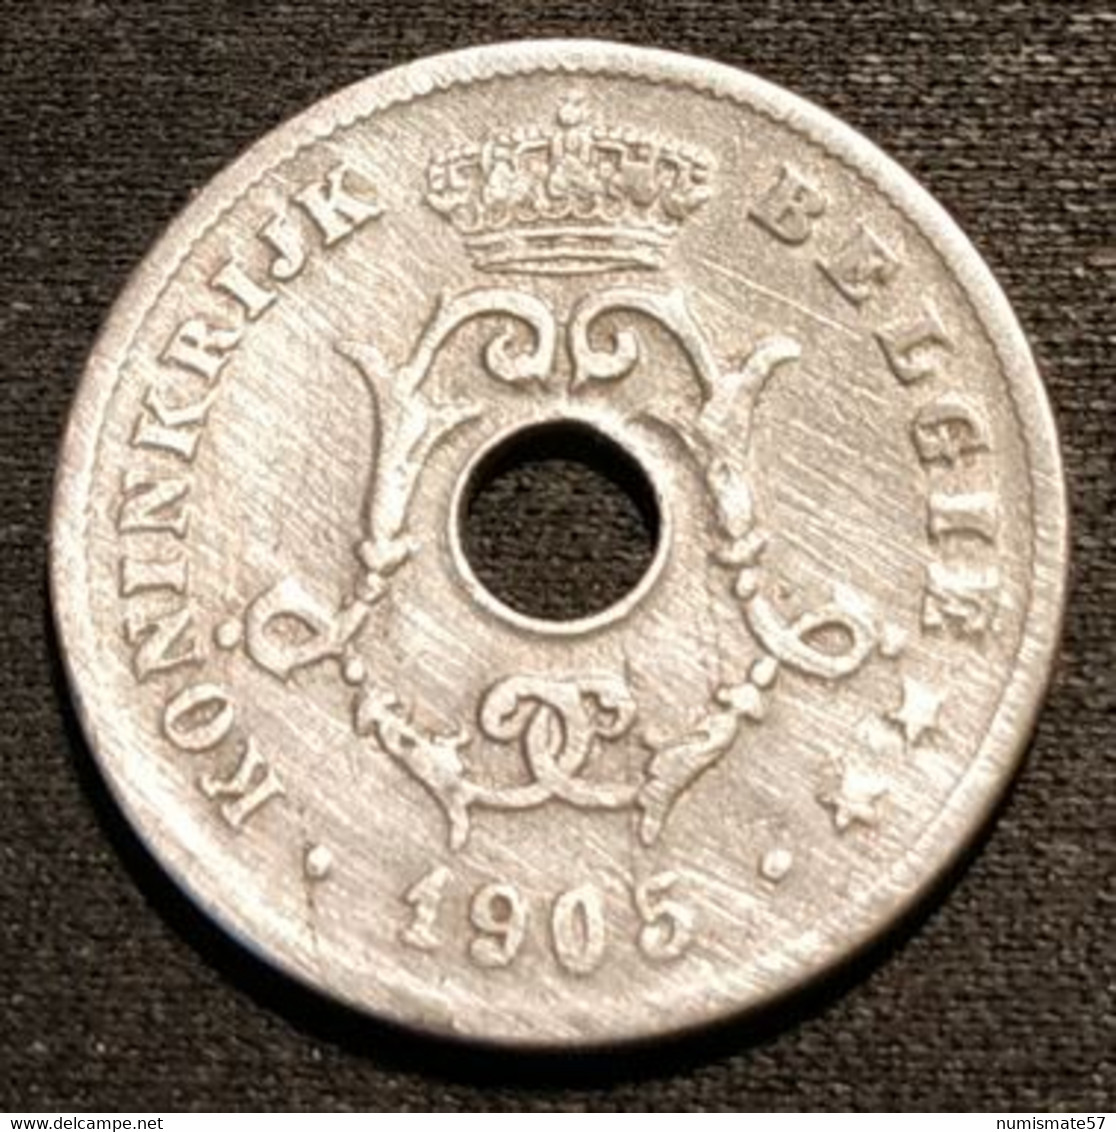 BELGIQUE - BELGIUM - 10 CENTIMES 1905 - Légende NL - Léopold II - Type Michaux - KM 53 - 10 Centimes